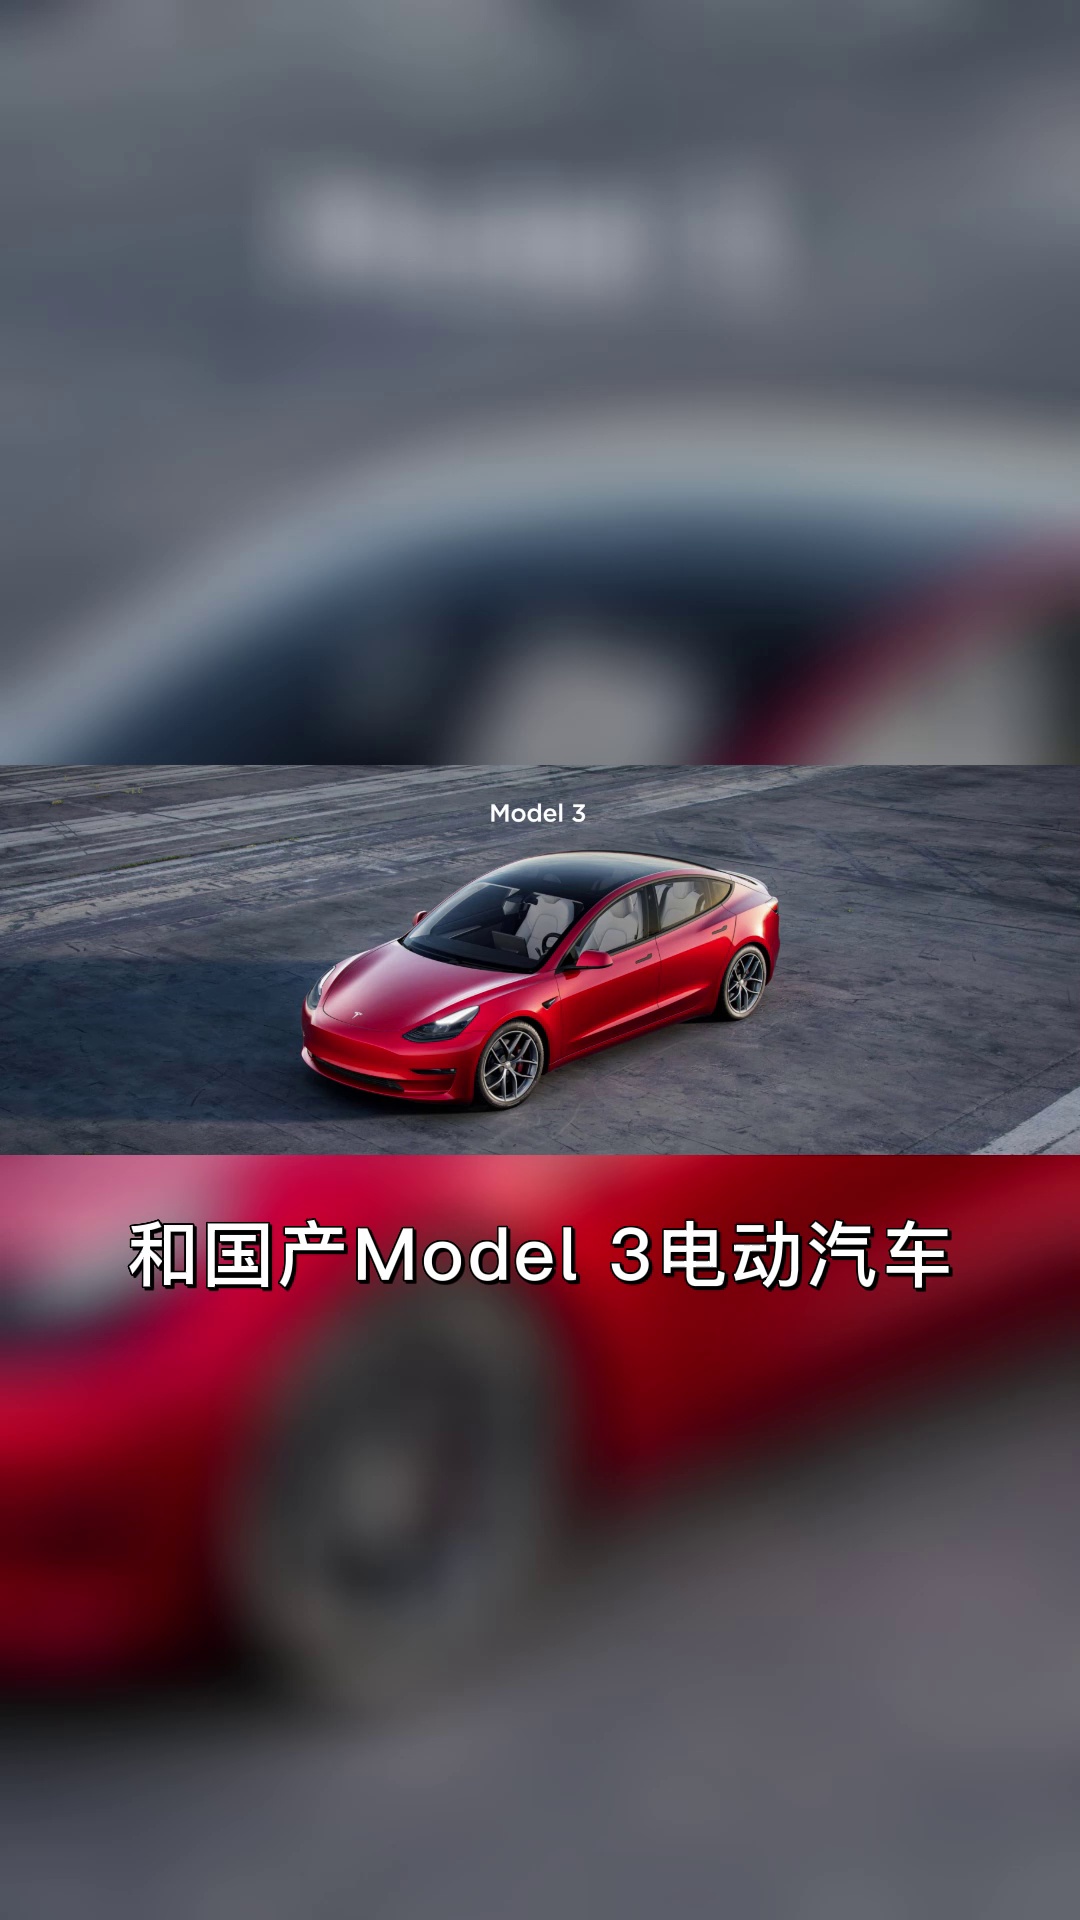 特斯拉召回部分进口Model S、Model X及部分进口和国产Model 3